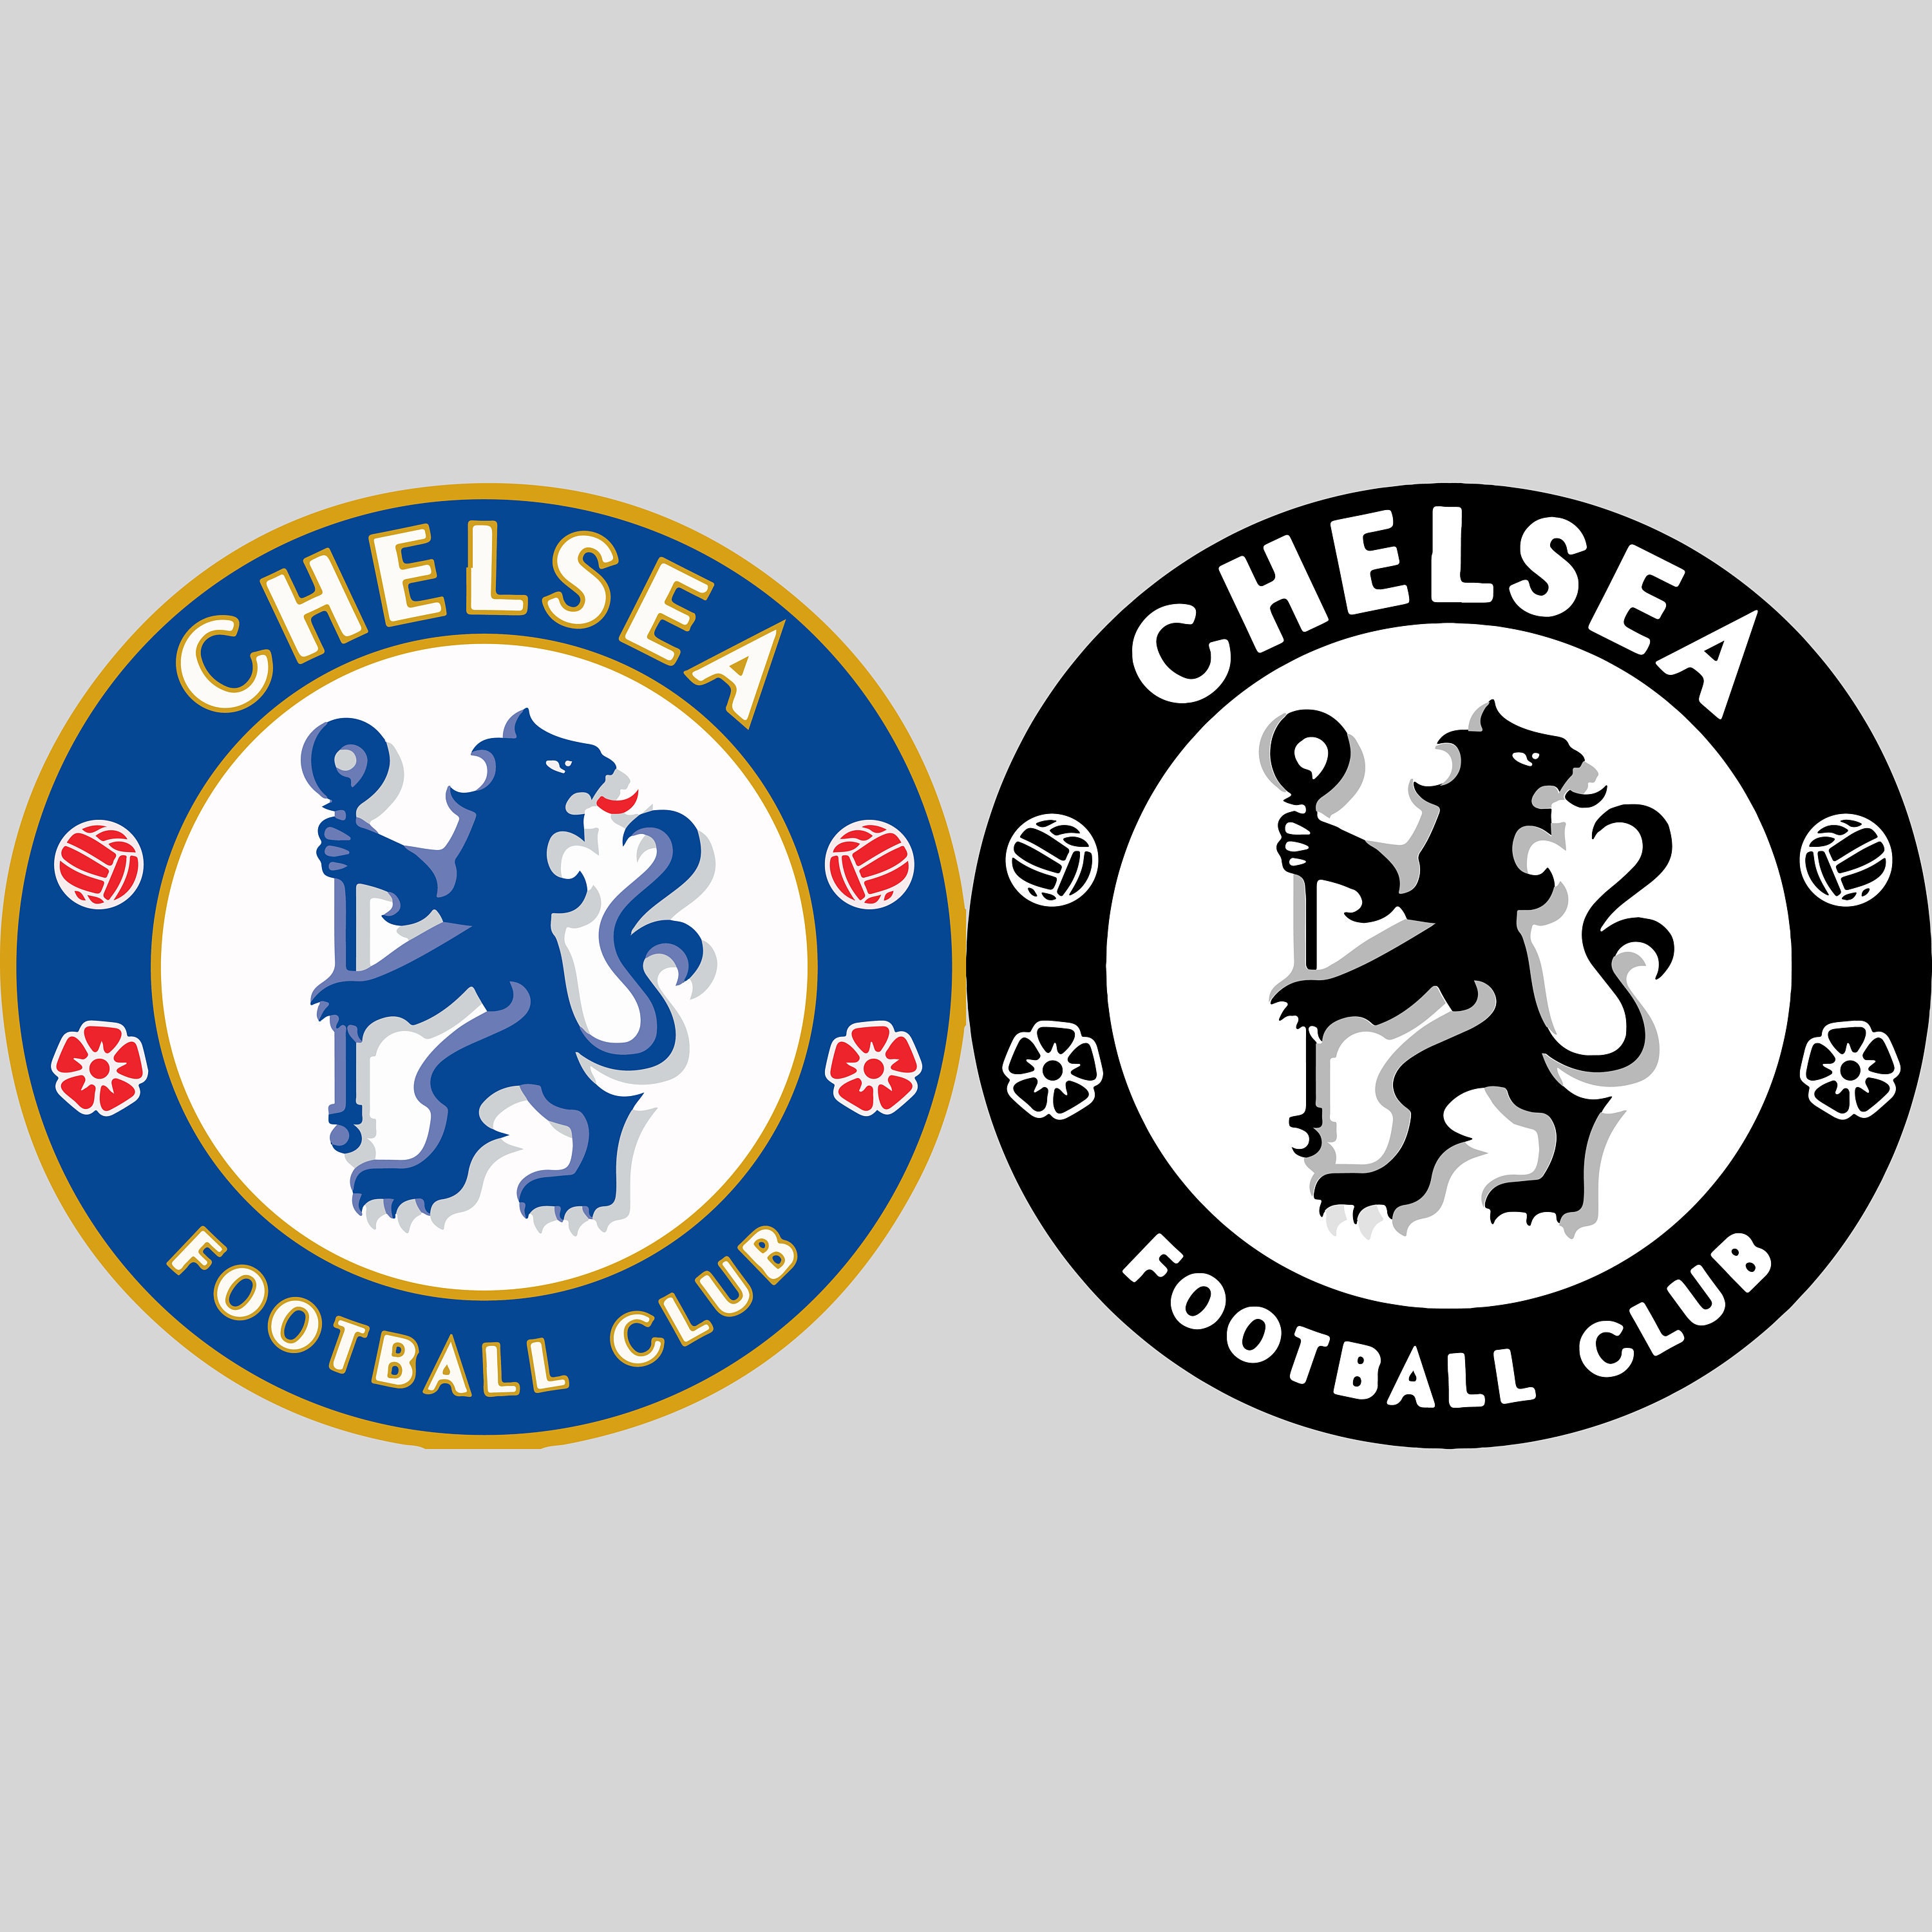 LOGO CHELSEA – TIỂU SỬ ĐỘI BÓNG VÀ QUÁ TRÌNH THIẾT KẾ LOGO CHELSEA - Brasol  -Thiết kế nhận diện thương hiệu chuyên nghiệp | Chelsea, Bóng đá, Biểu tượng